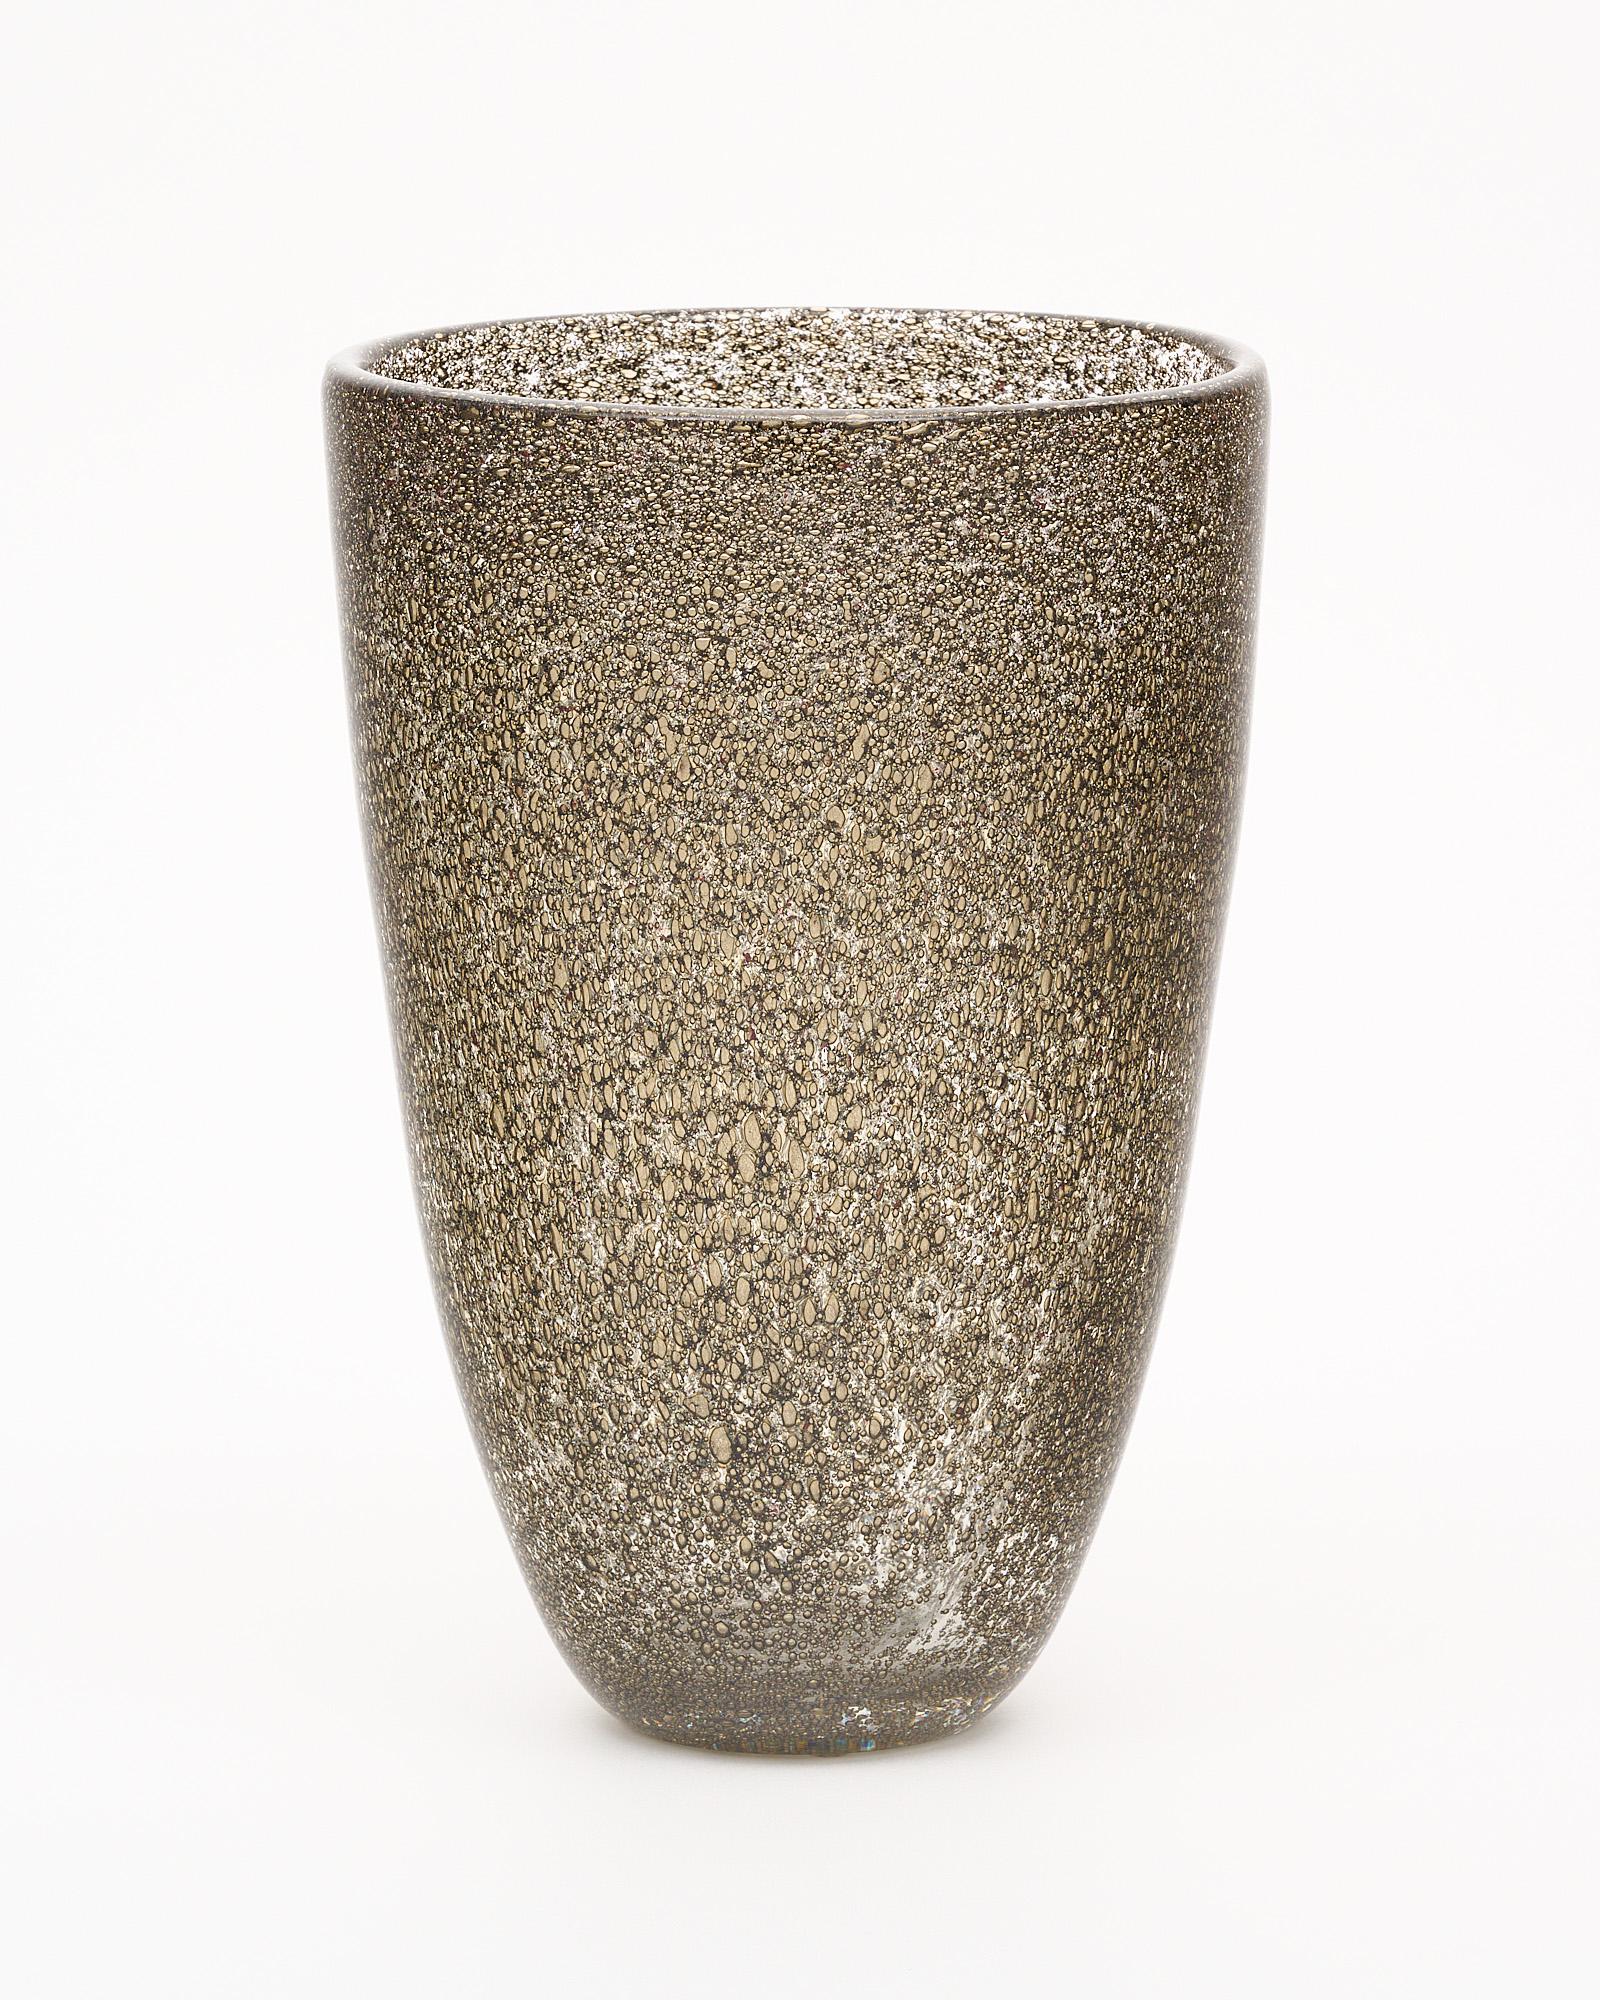 Vase de l'île de Murano, Italie. Ce vase soufflé à la main est fabriqué selon la technique du Pulegoso. Le verre Pulegoso, qui semble plein de bulles, est fabriqué en injectant dans le verre en fusion un composant qui réagit et libère ainsi des